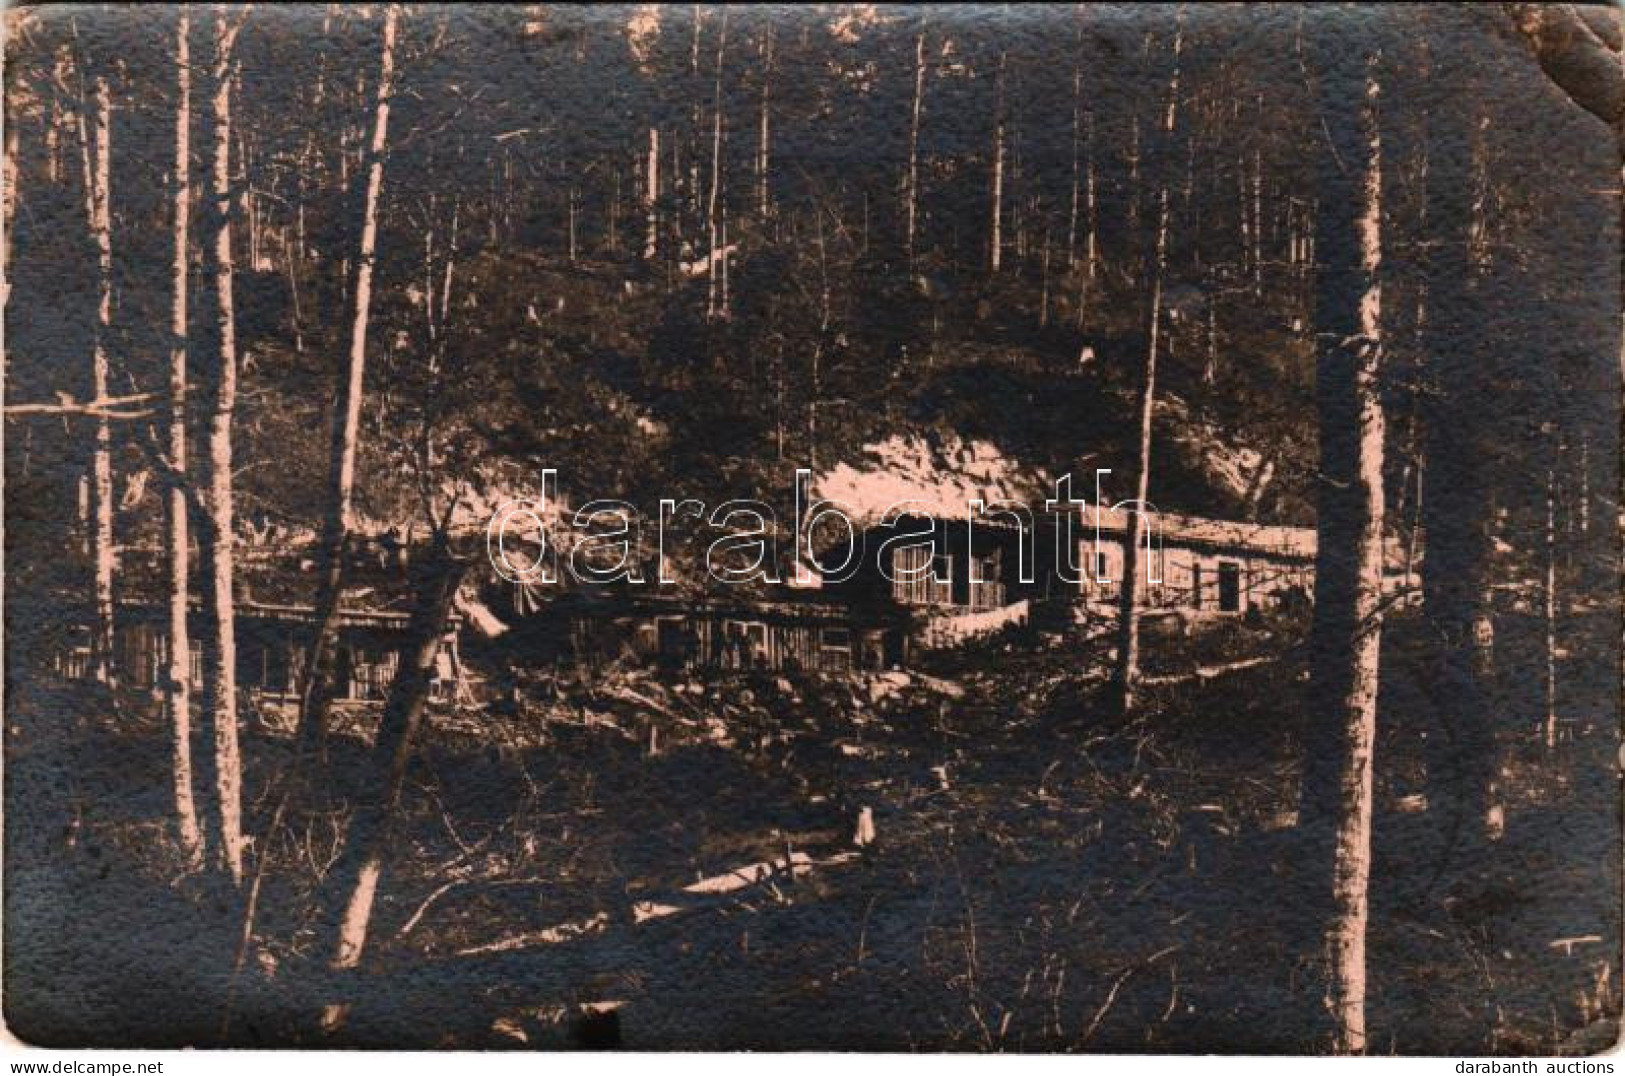 T2/T3 1918 Osztrák-magyar Erődítések Az Erdőben / WWI K.u.K. Military Camp In The Forest. Photo + "M. Kir. Pozsonyi 13.  - Unclassified